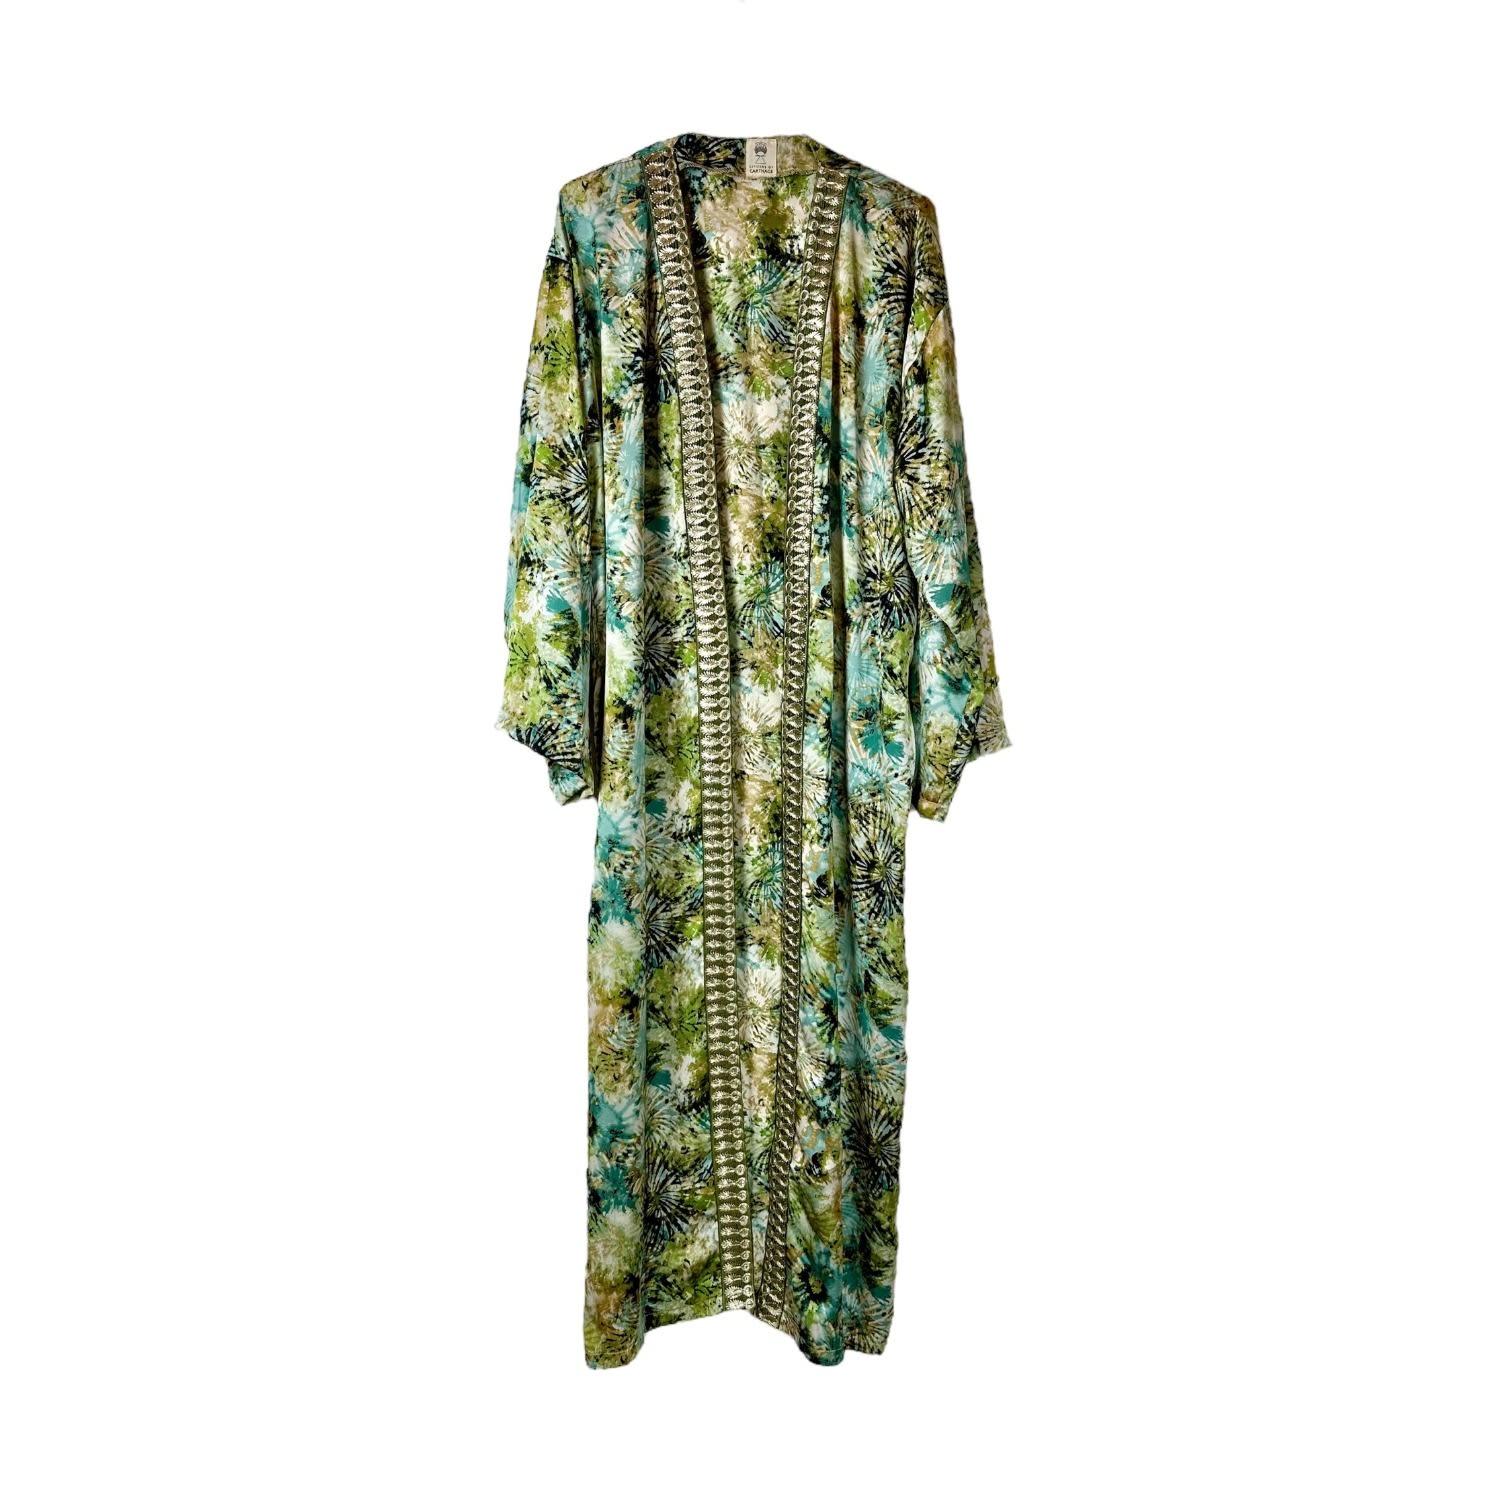 Women's Green Amazzoni Kimono One Size Citizens of Carthage